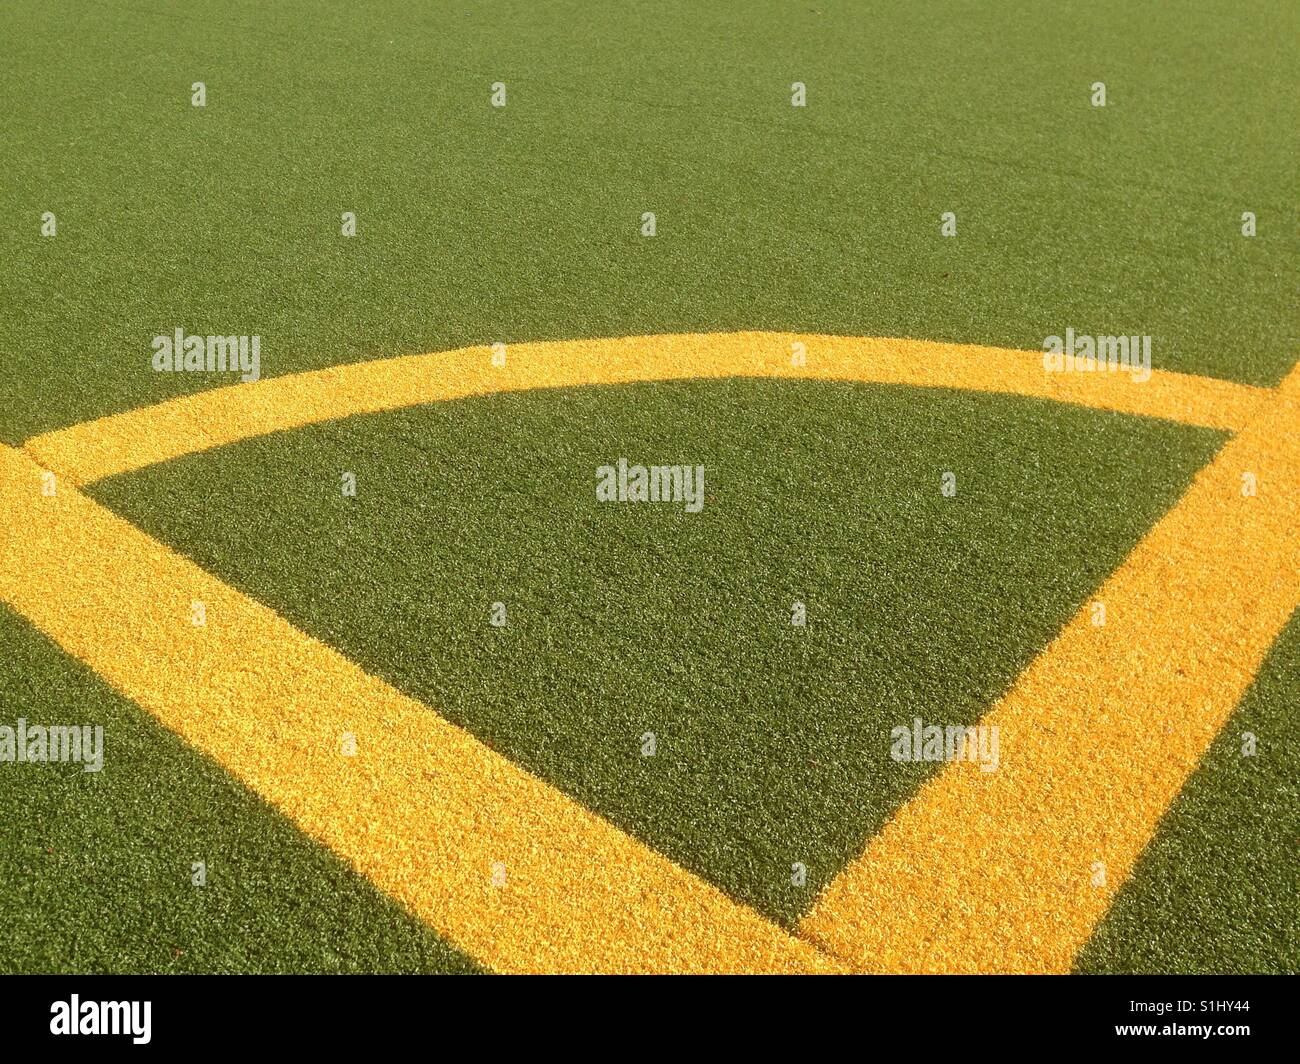 Lignes d'angle jaune sur un terrain de football Banque D'Images